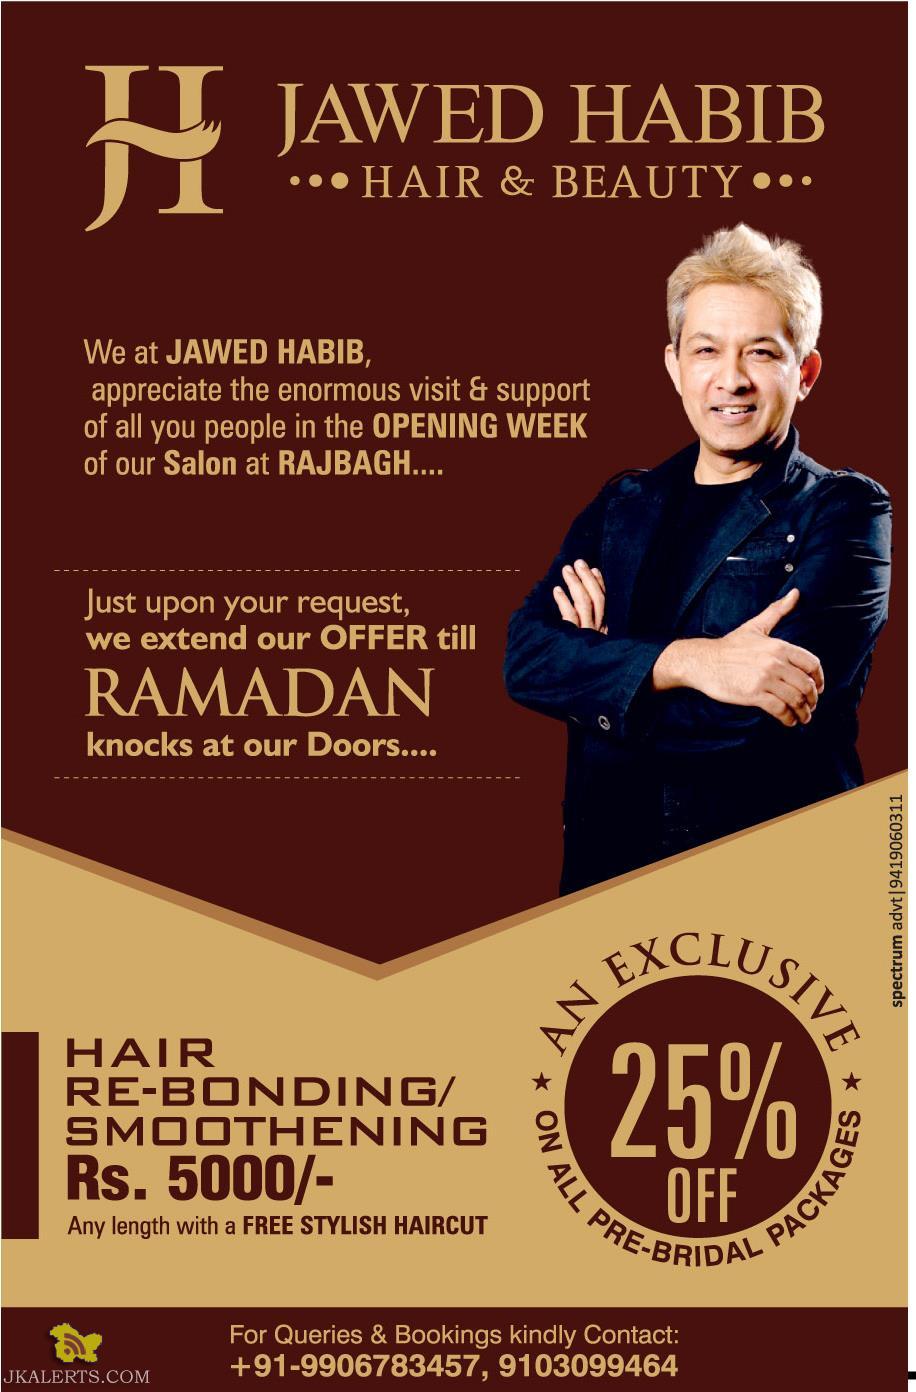 Jawed Habib Hair Straightening Price List Deals, 41% OFF 